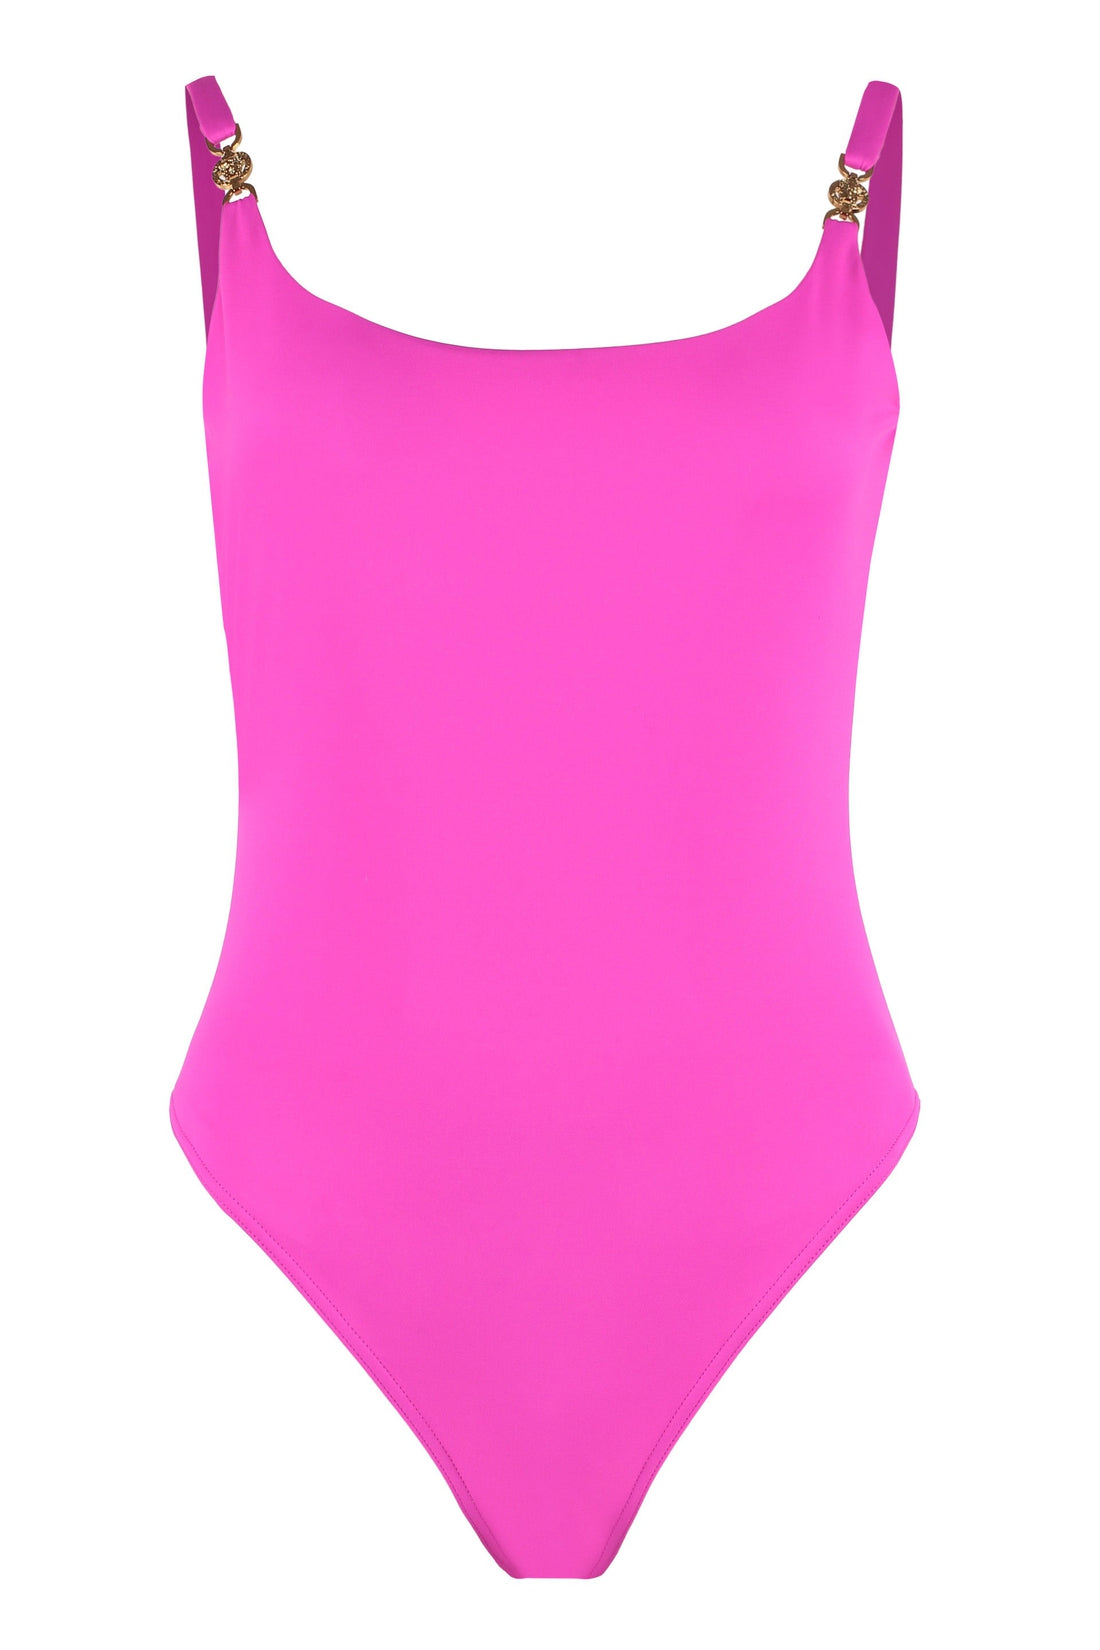 Versace-OUTLET-SALE-Medusa Biggie one-piece swimsuit-ARCHIVIST